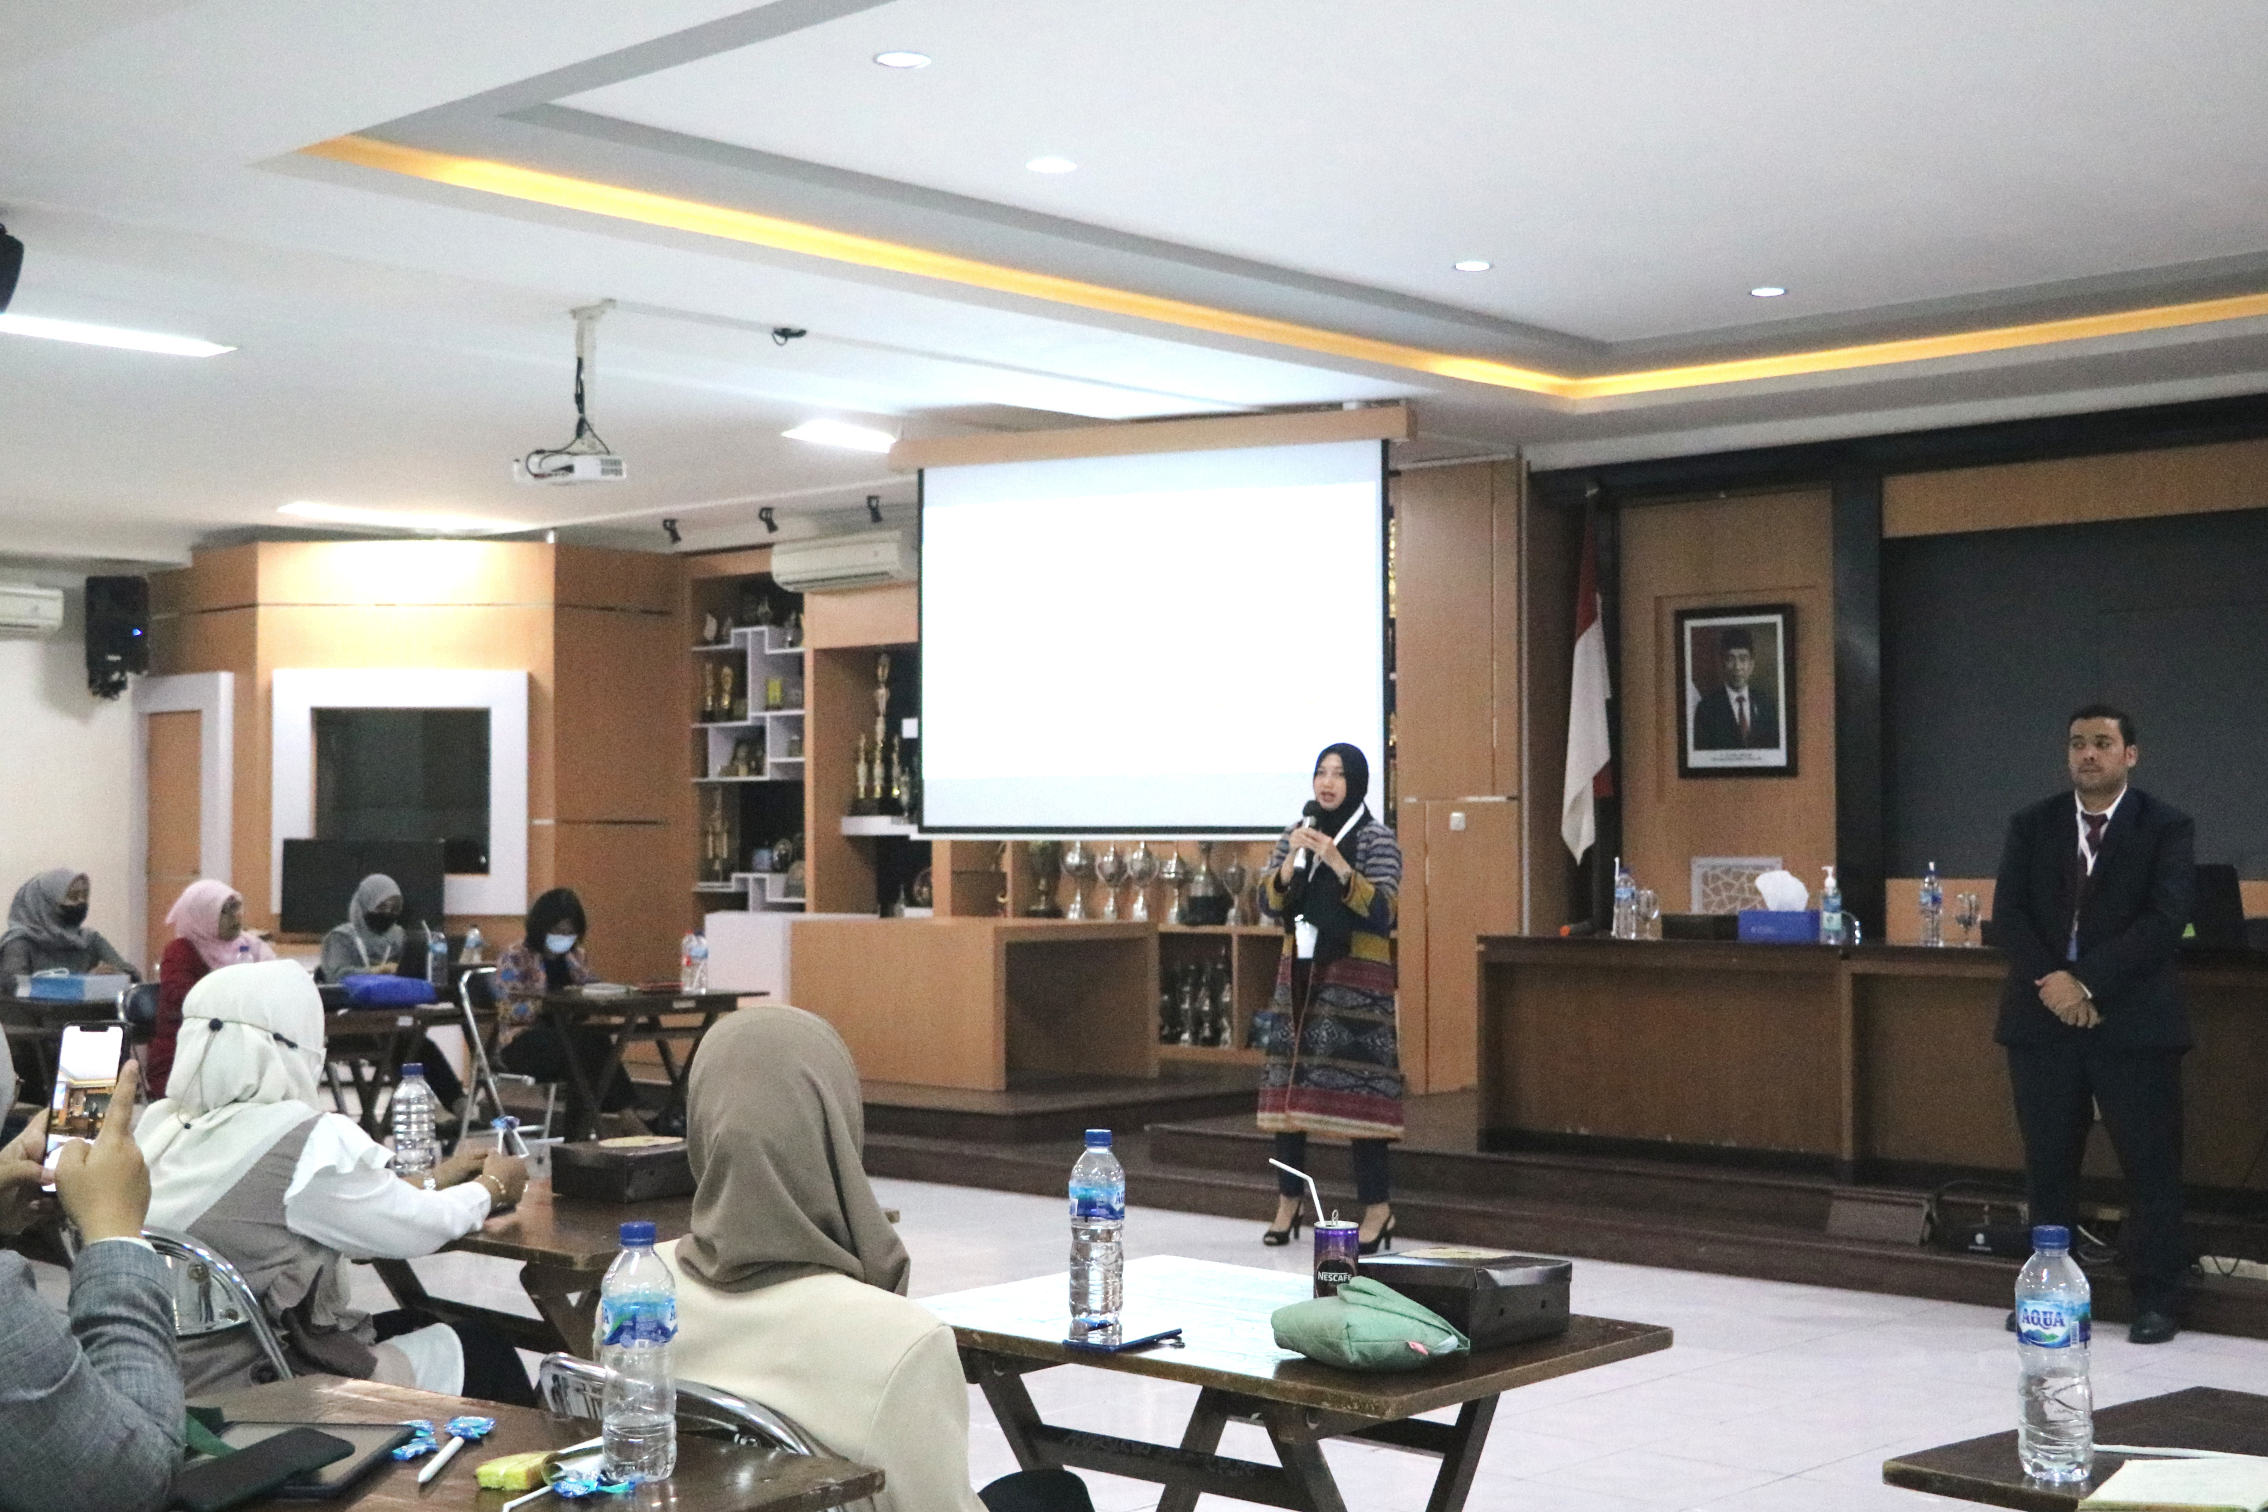 Kunjungan Universitas Islam Internasional Indonesia